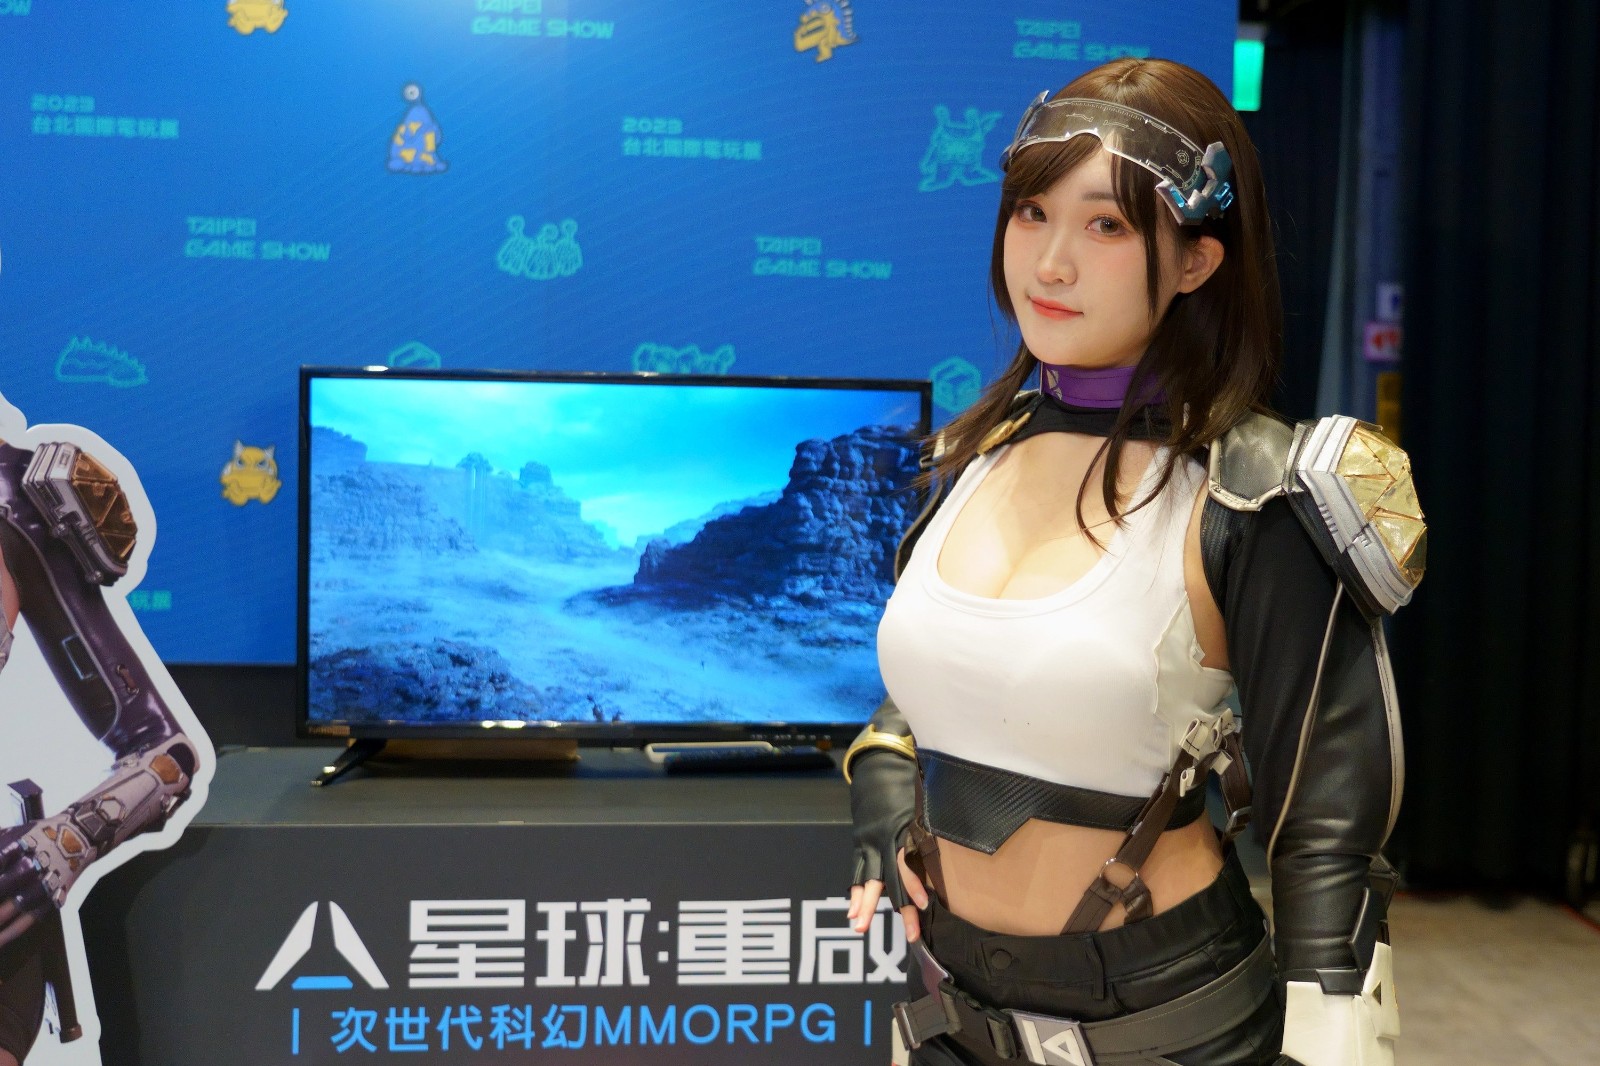 中國台北國際電玩展2月2日開始 任天堂首度參加